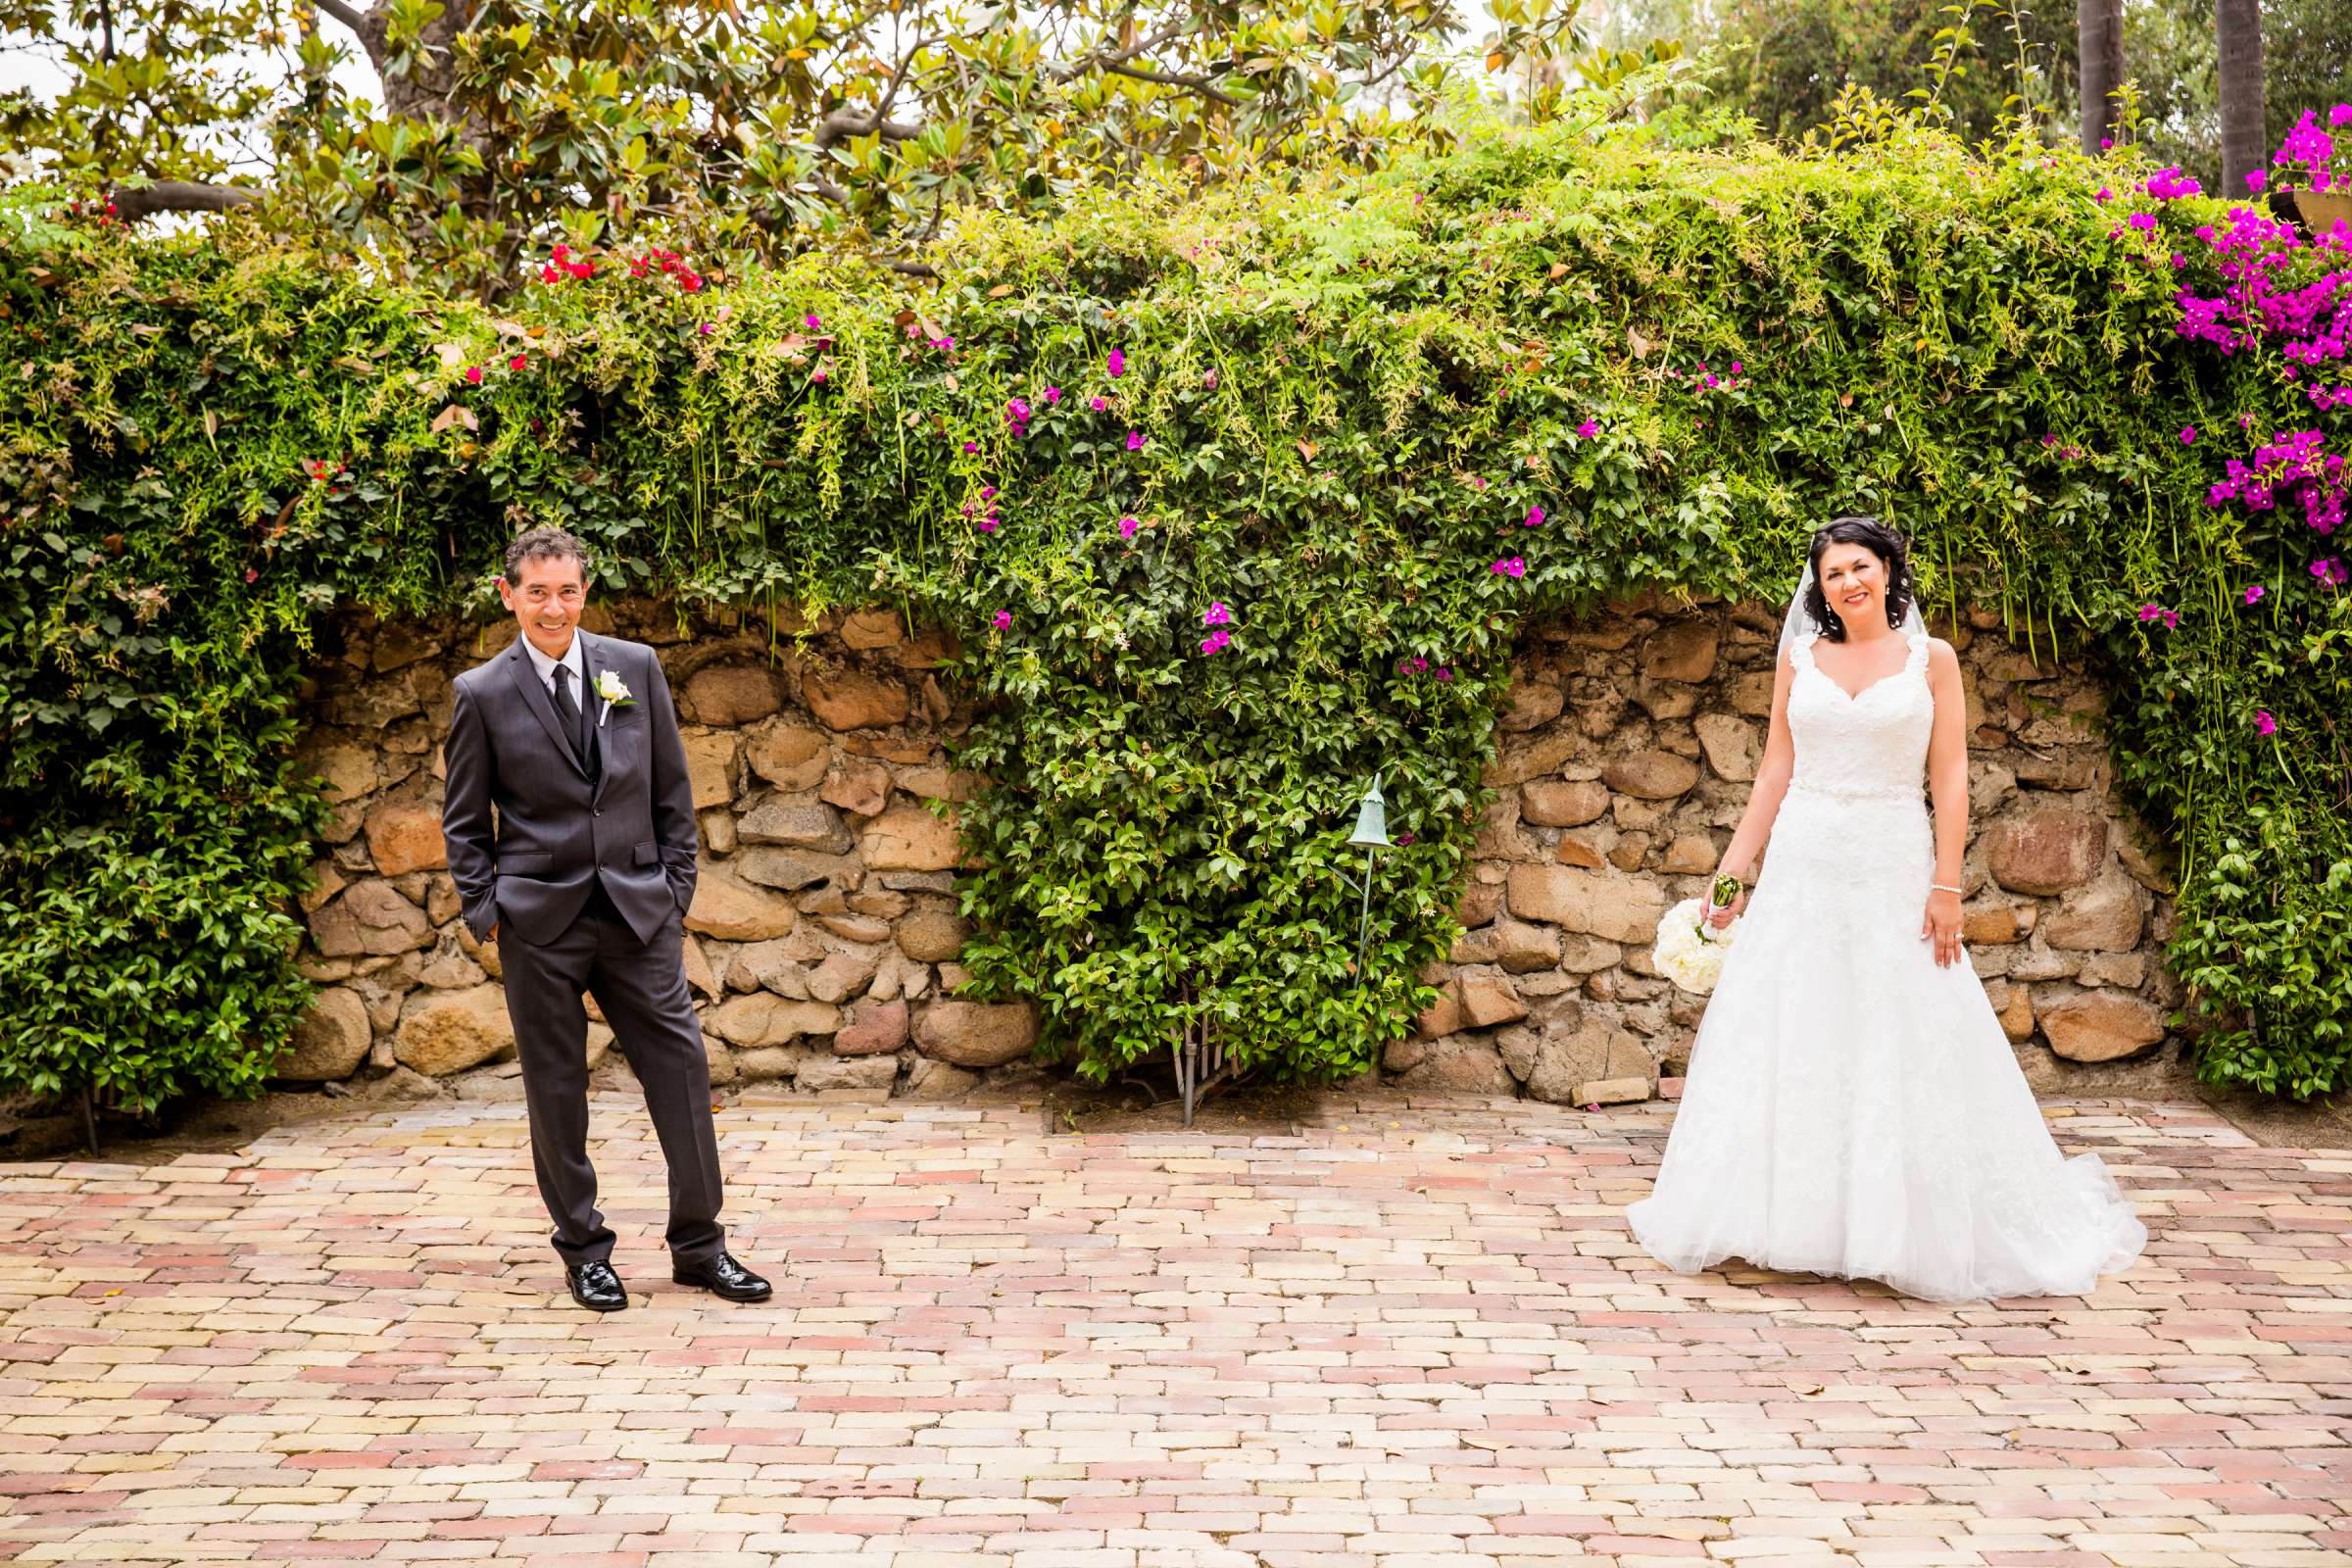 Rancho Buena Vista Adobe Wedding, Ellinor and Frank Wedding Photo #36 by True Photography